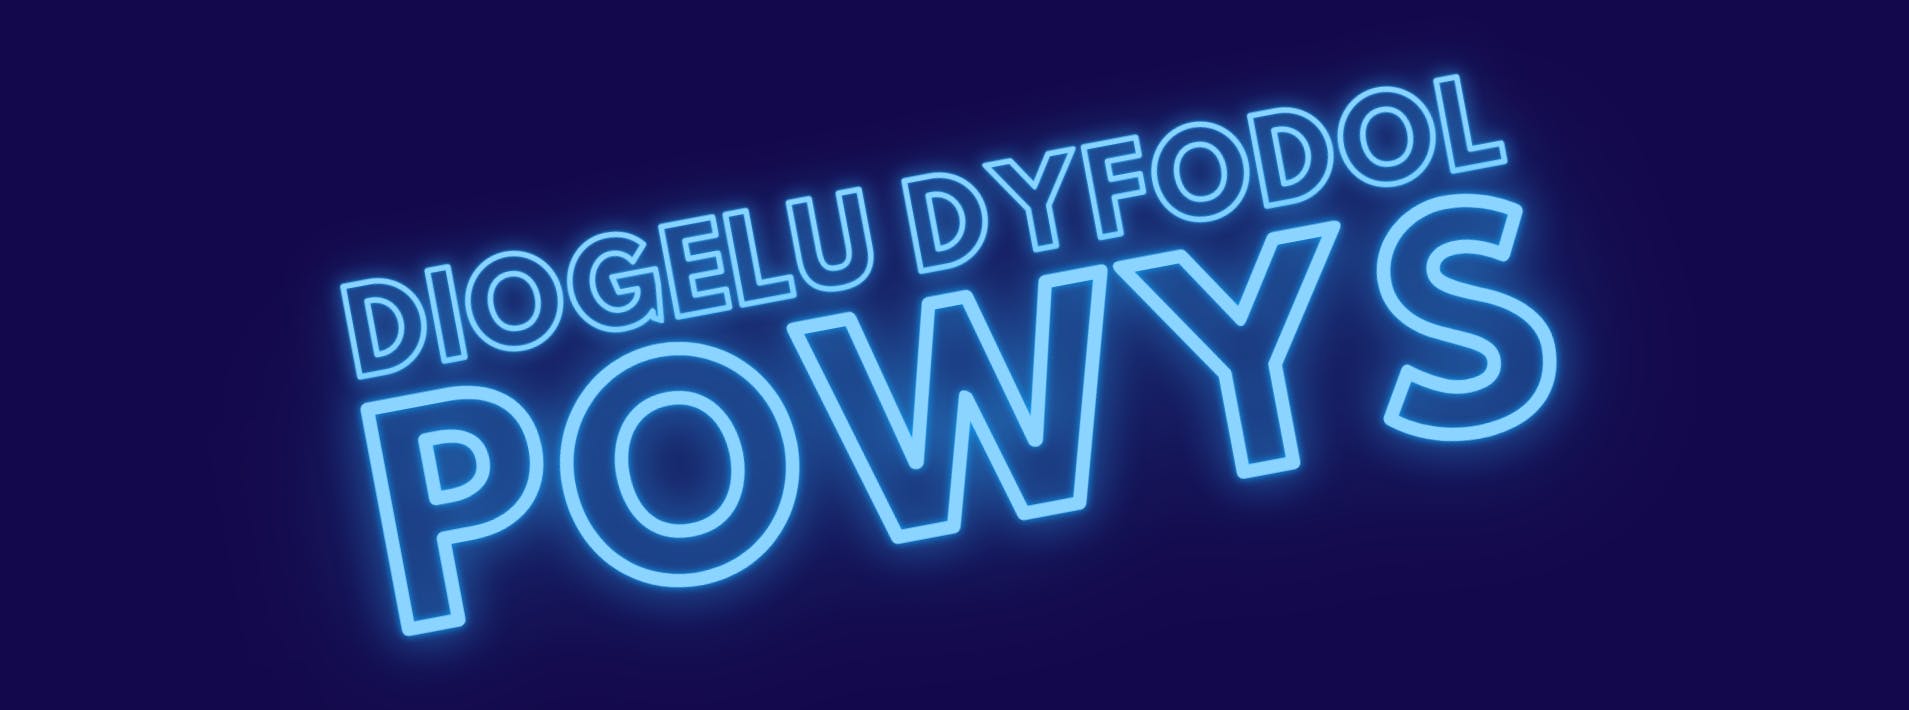 Diogelu Dyfodol Powys logo